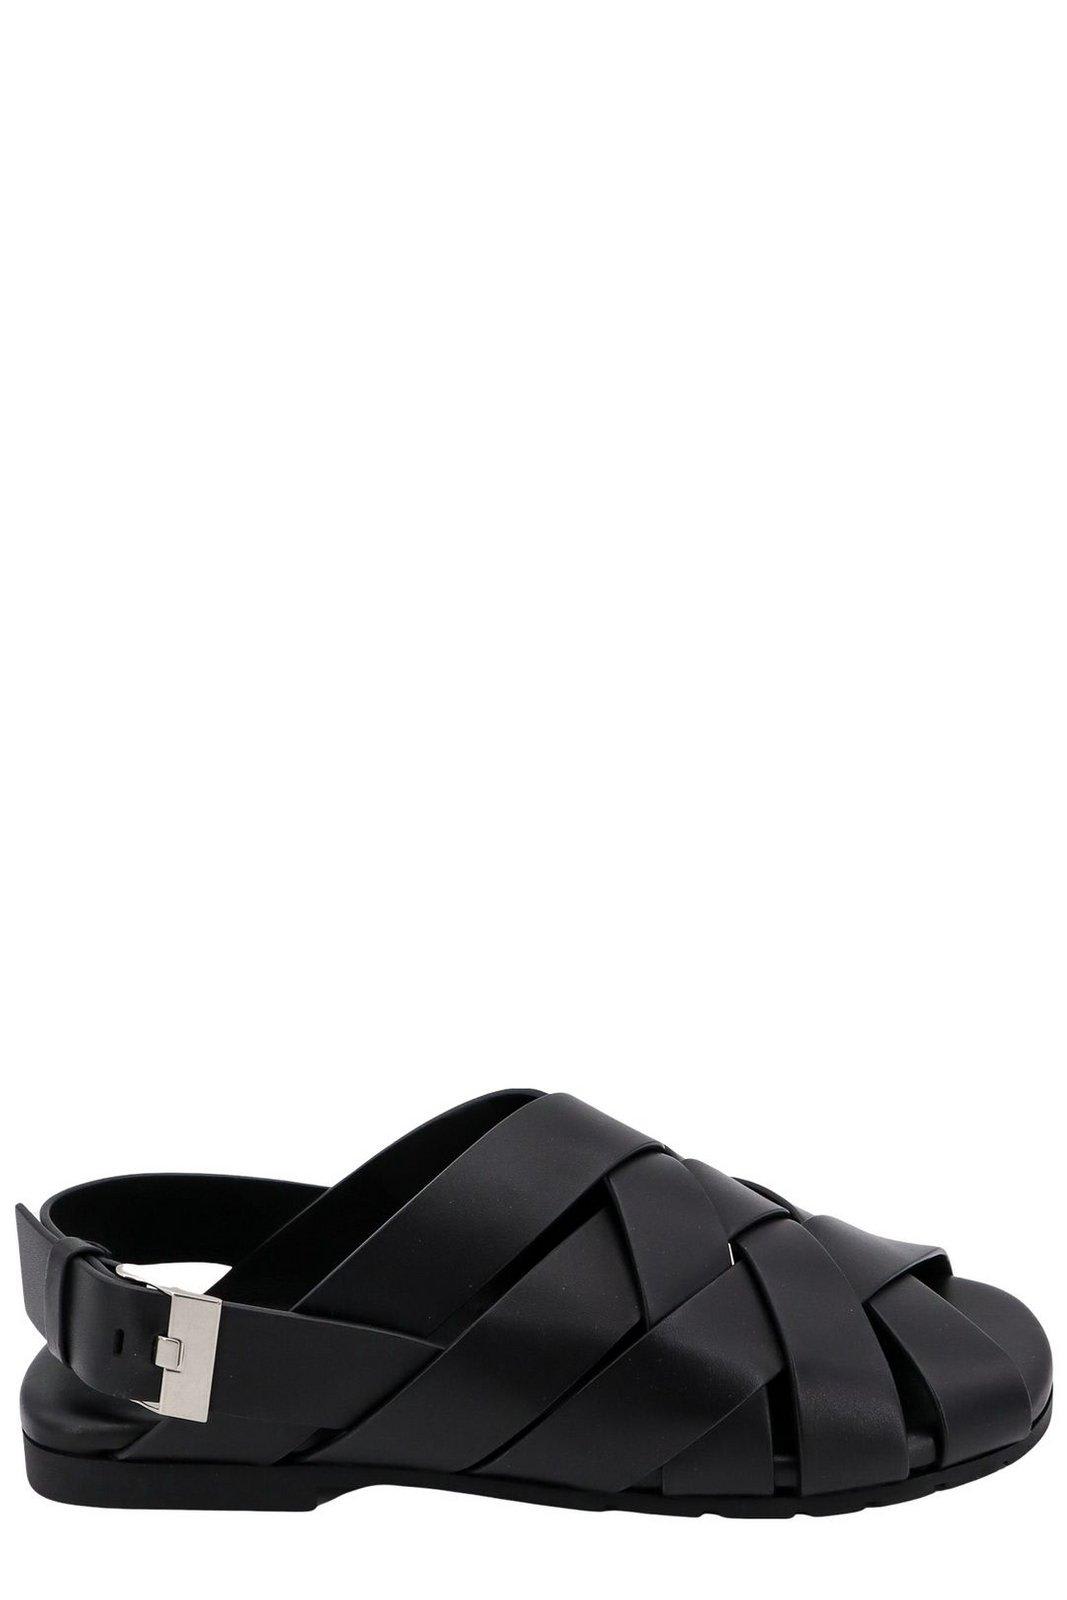 Shop Bottega Veneta Alfie Sandals In Black